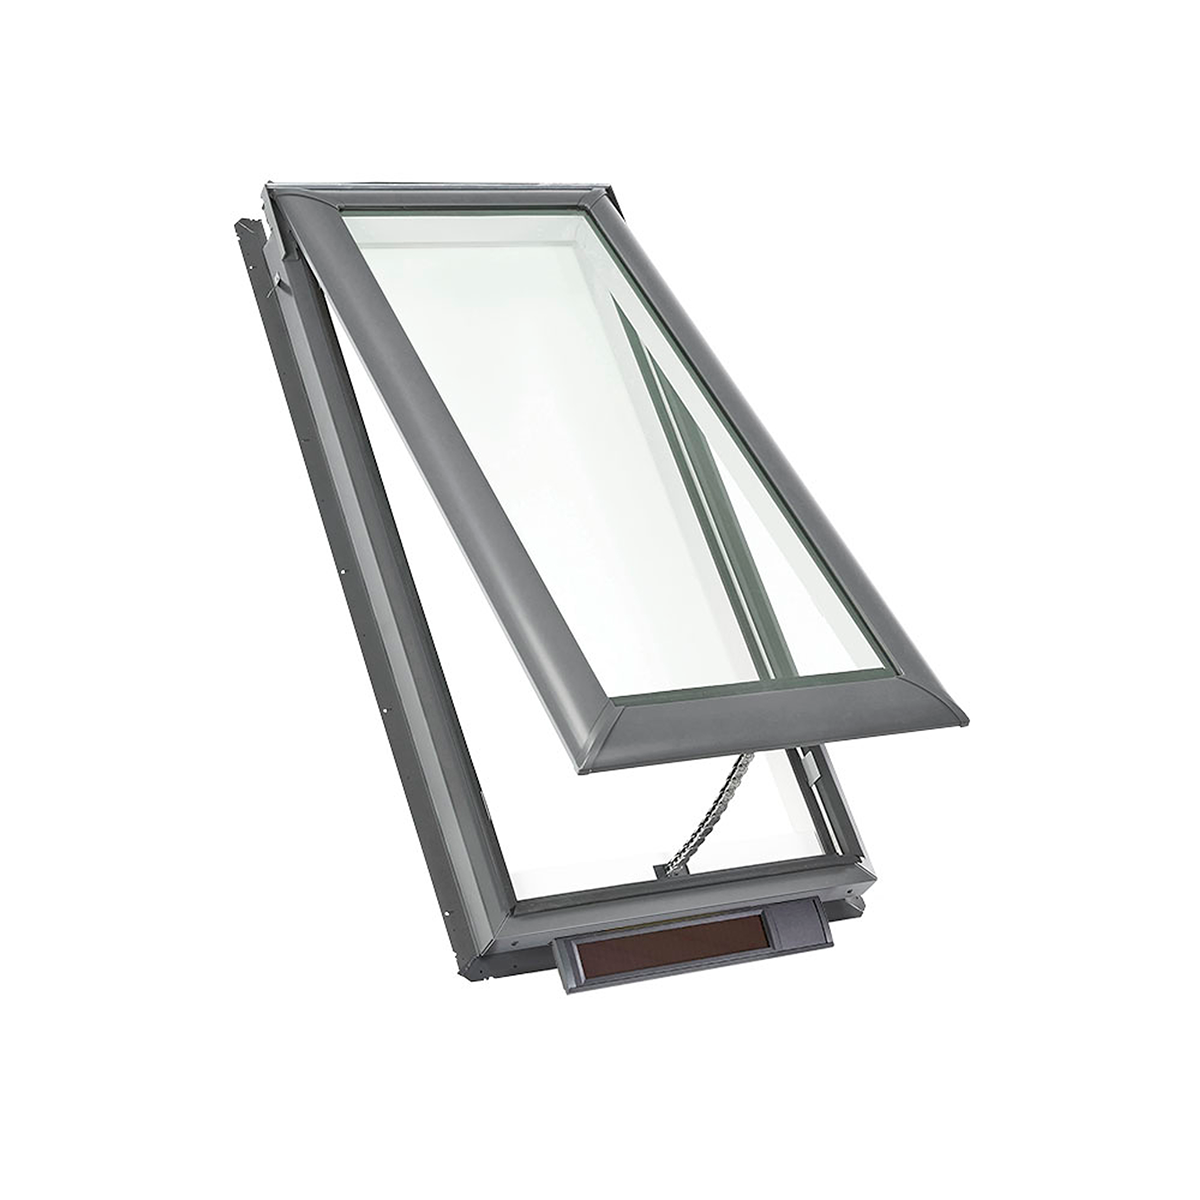 Claraboya de montaje en plataforma con energía solar y vidrio laminado de bajo E3 - 44-1/4 pulg. x 26-7/8 pulg. - VSS S01